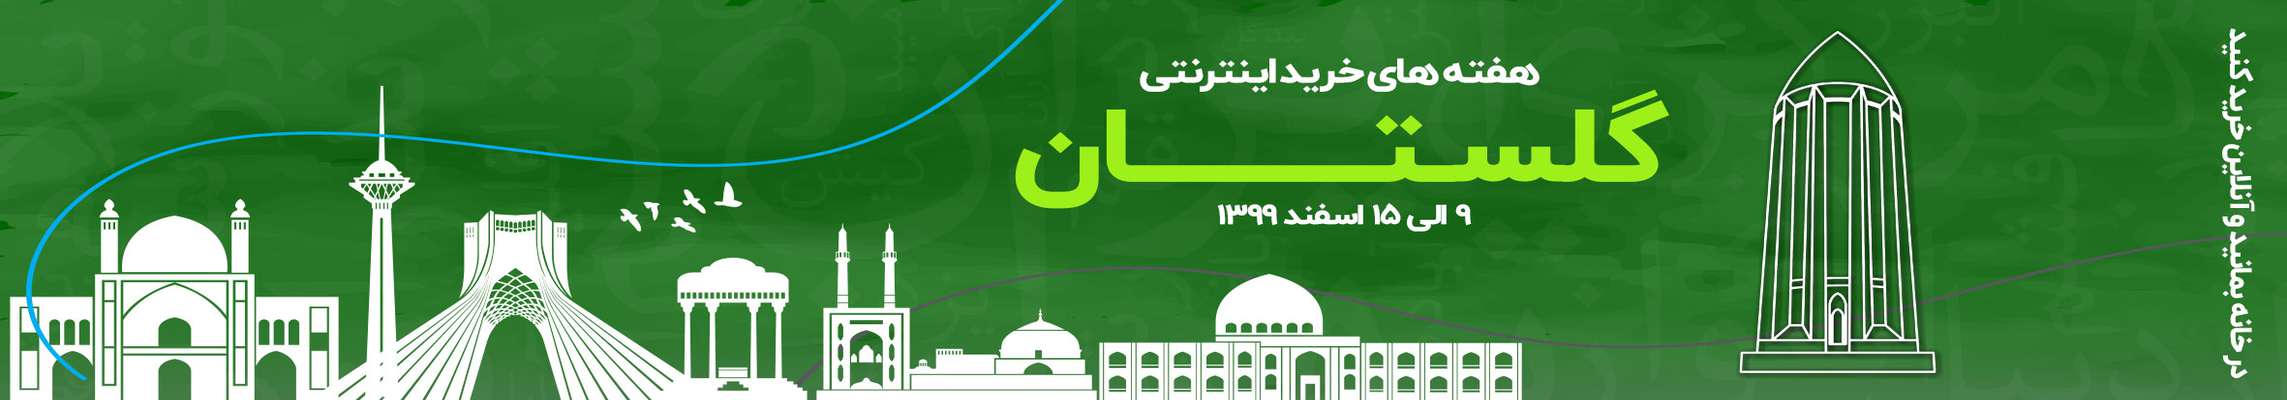 هفته های خرید اینترنتی در گلستان برگزار میشود.